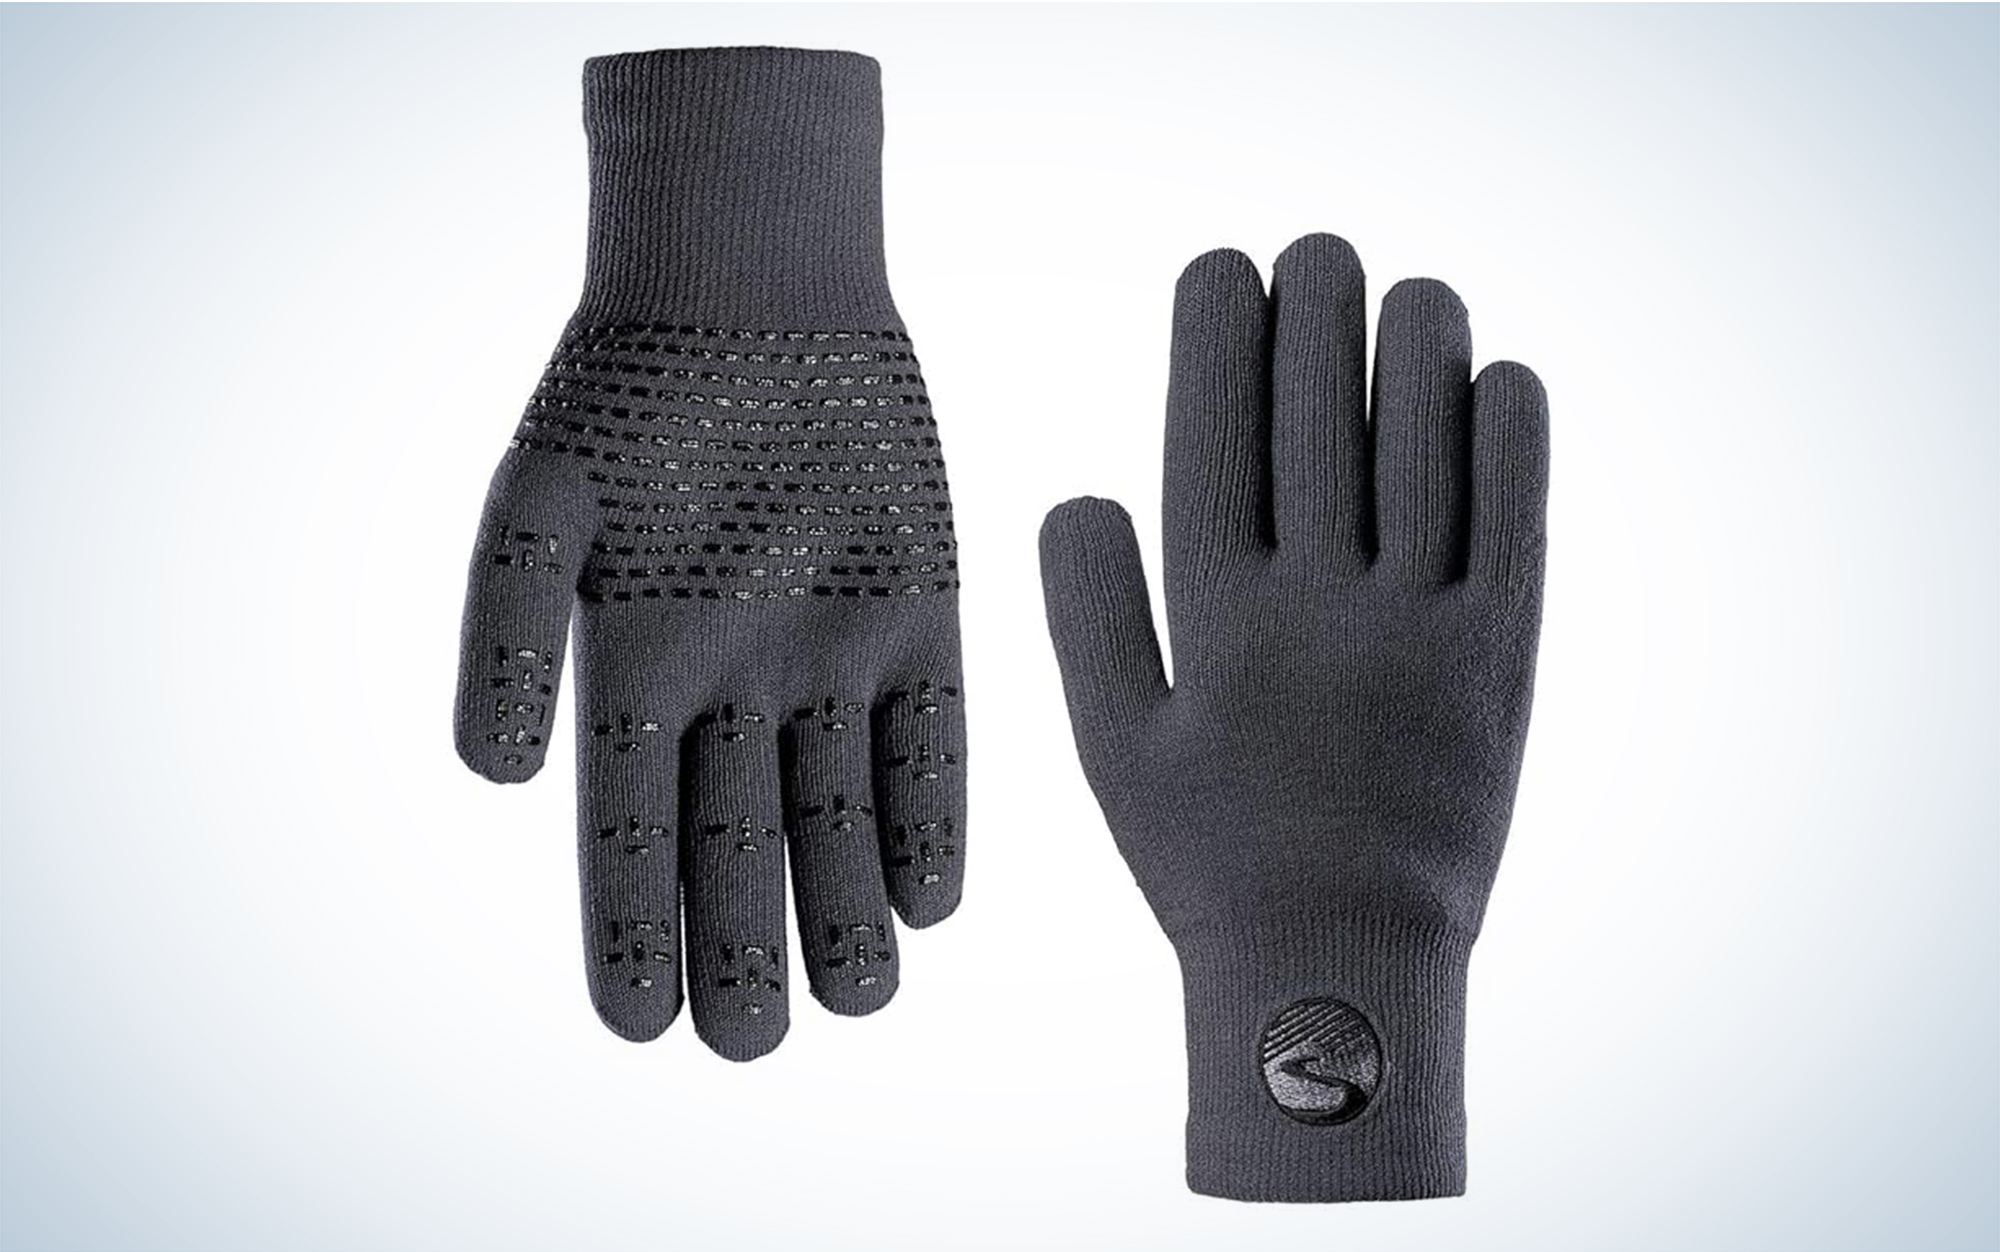 Trail Gloves, Hiking Gloves